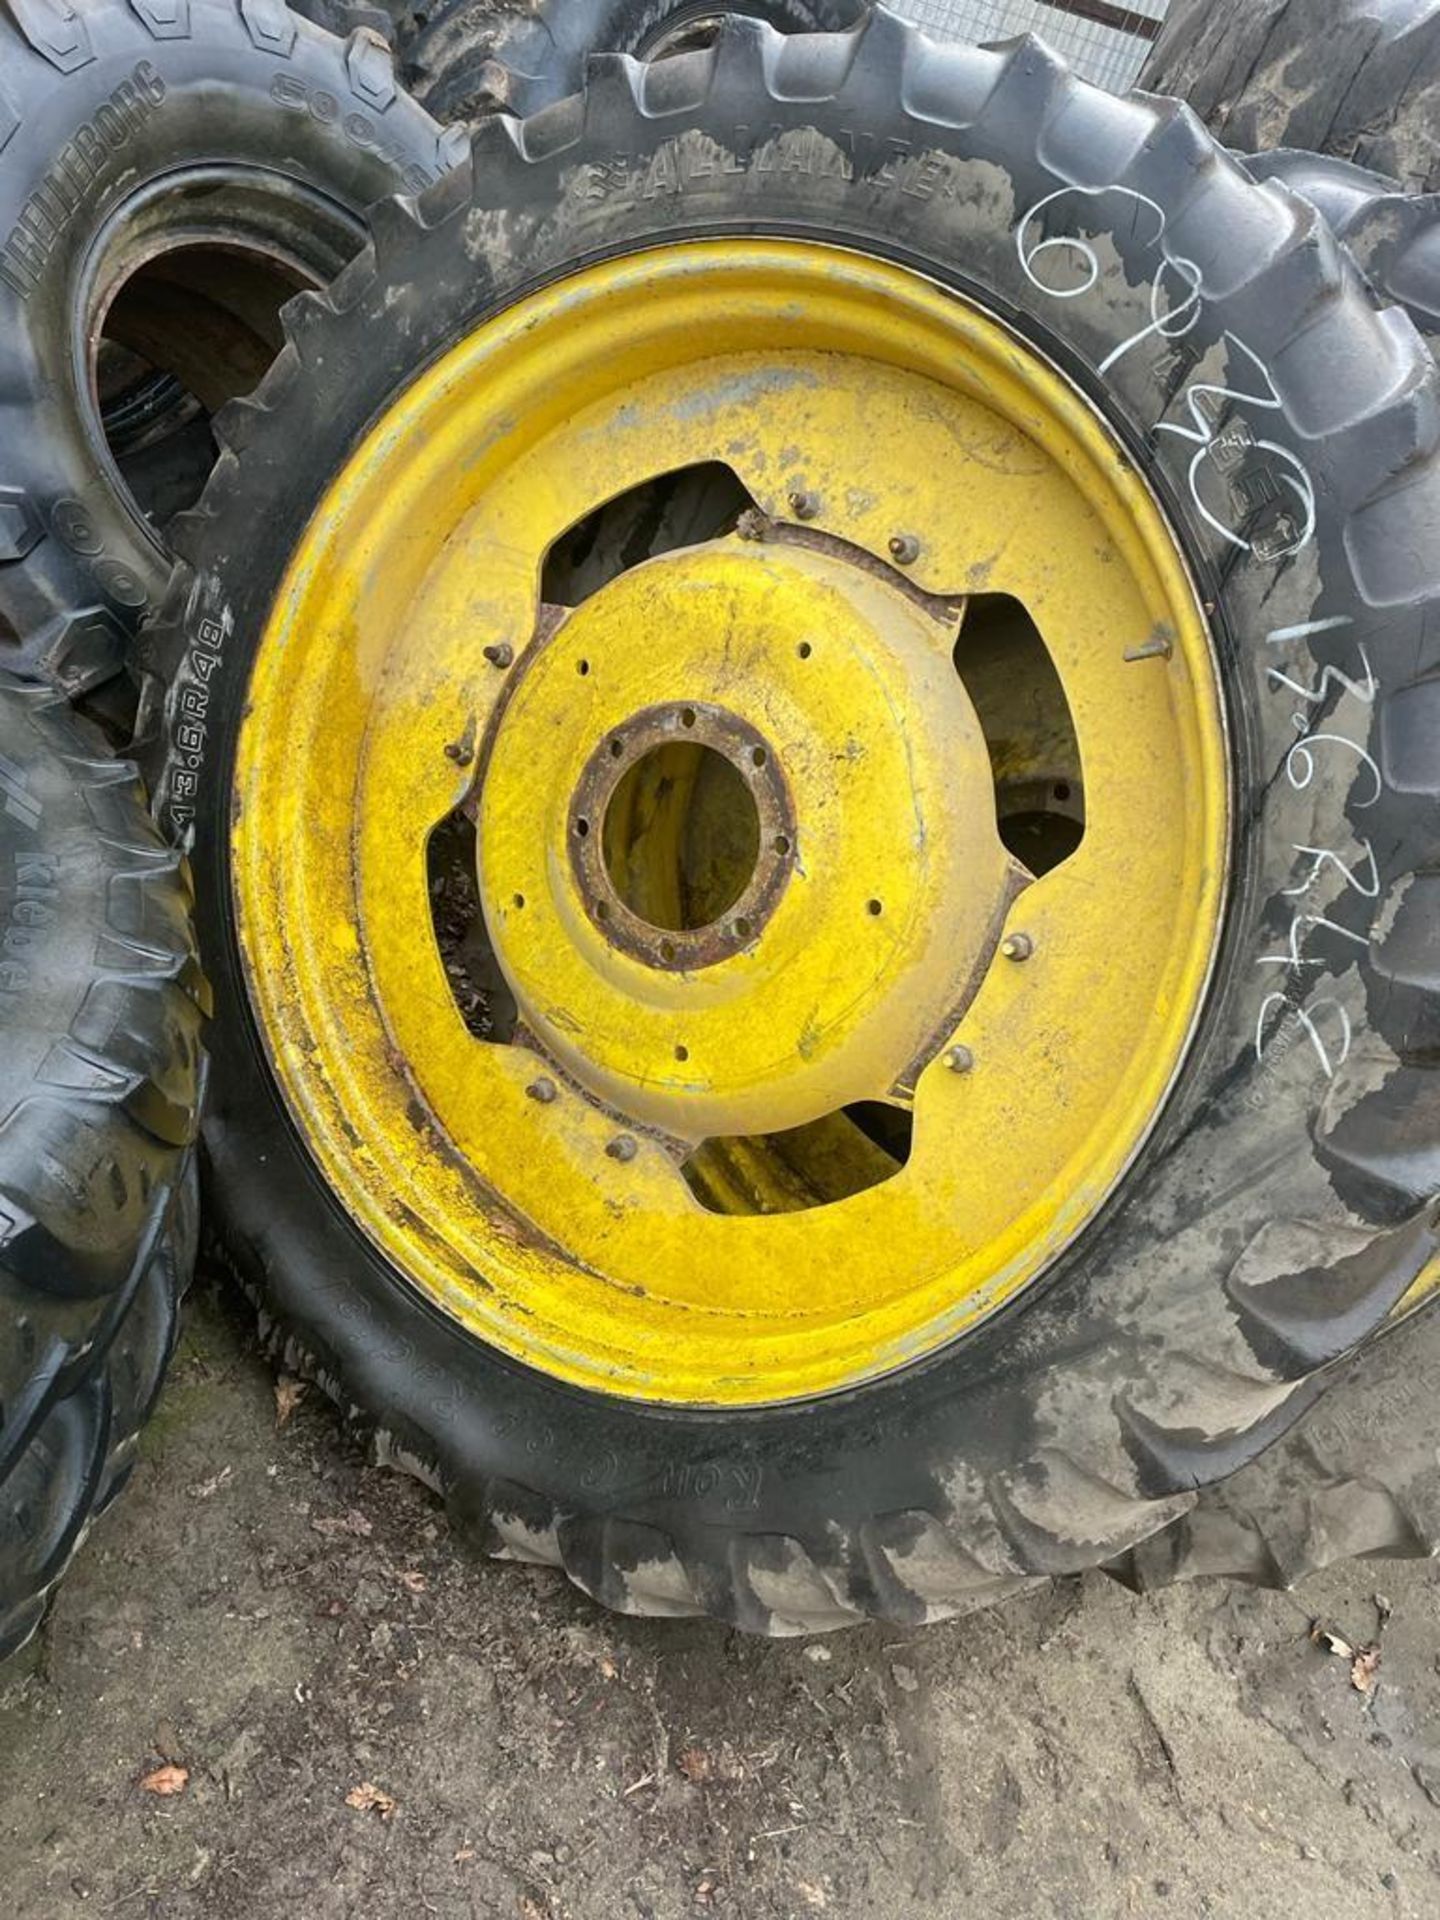 2 x 13.6 R48 Rear Tyres